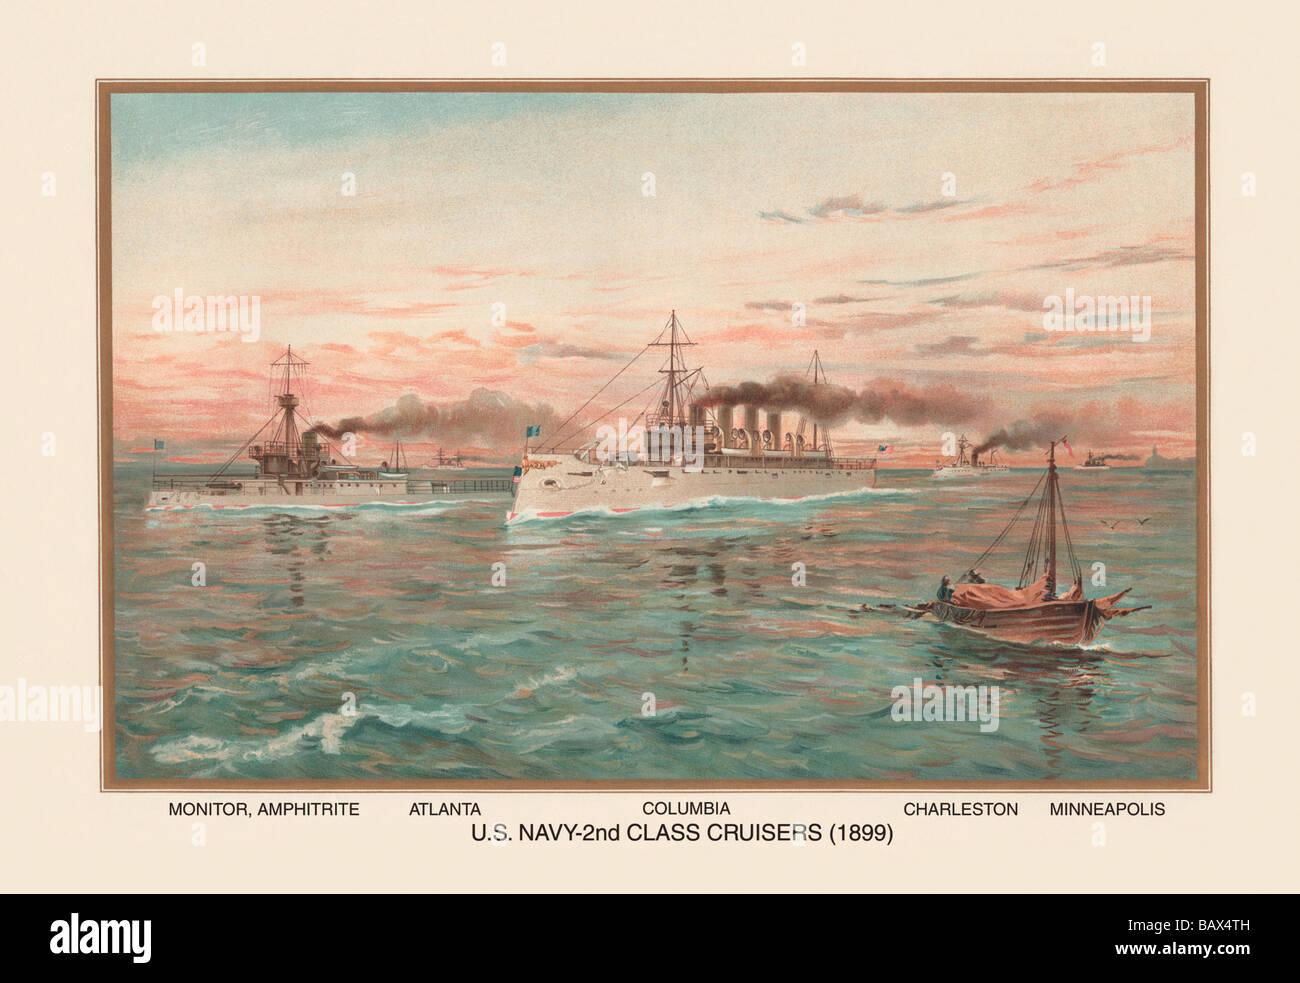 2e classe de croiseurs de la marine américaine (1899) - Colombie Banque D'Images